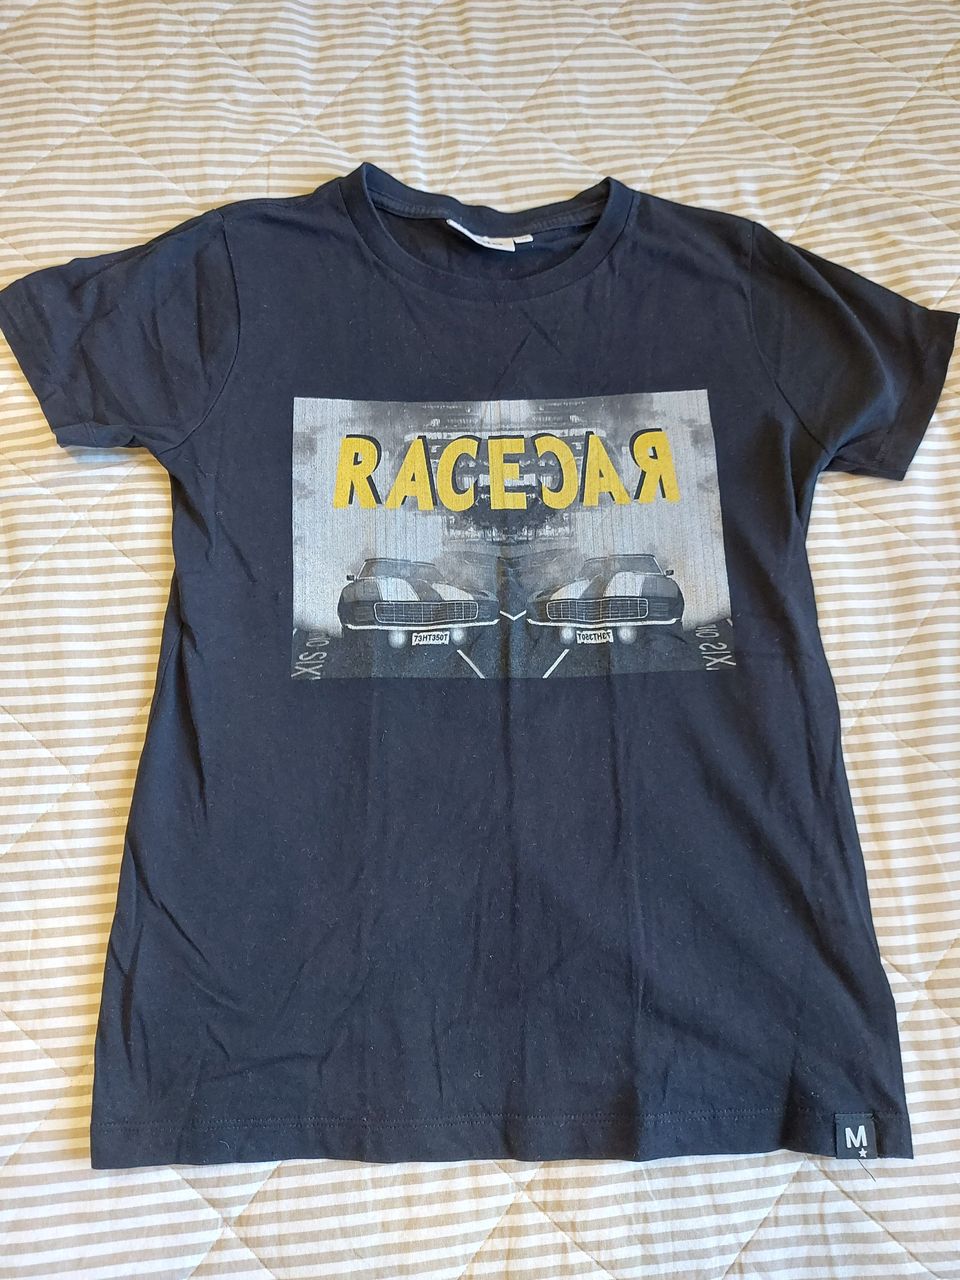 Molo musta racecar t-paita koossa 152cm